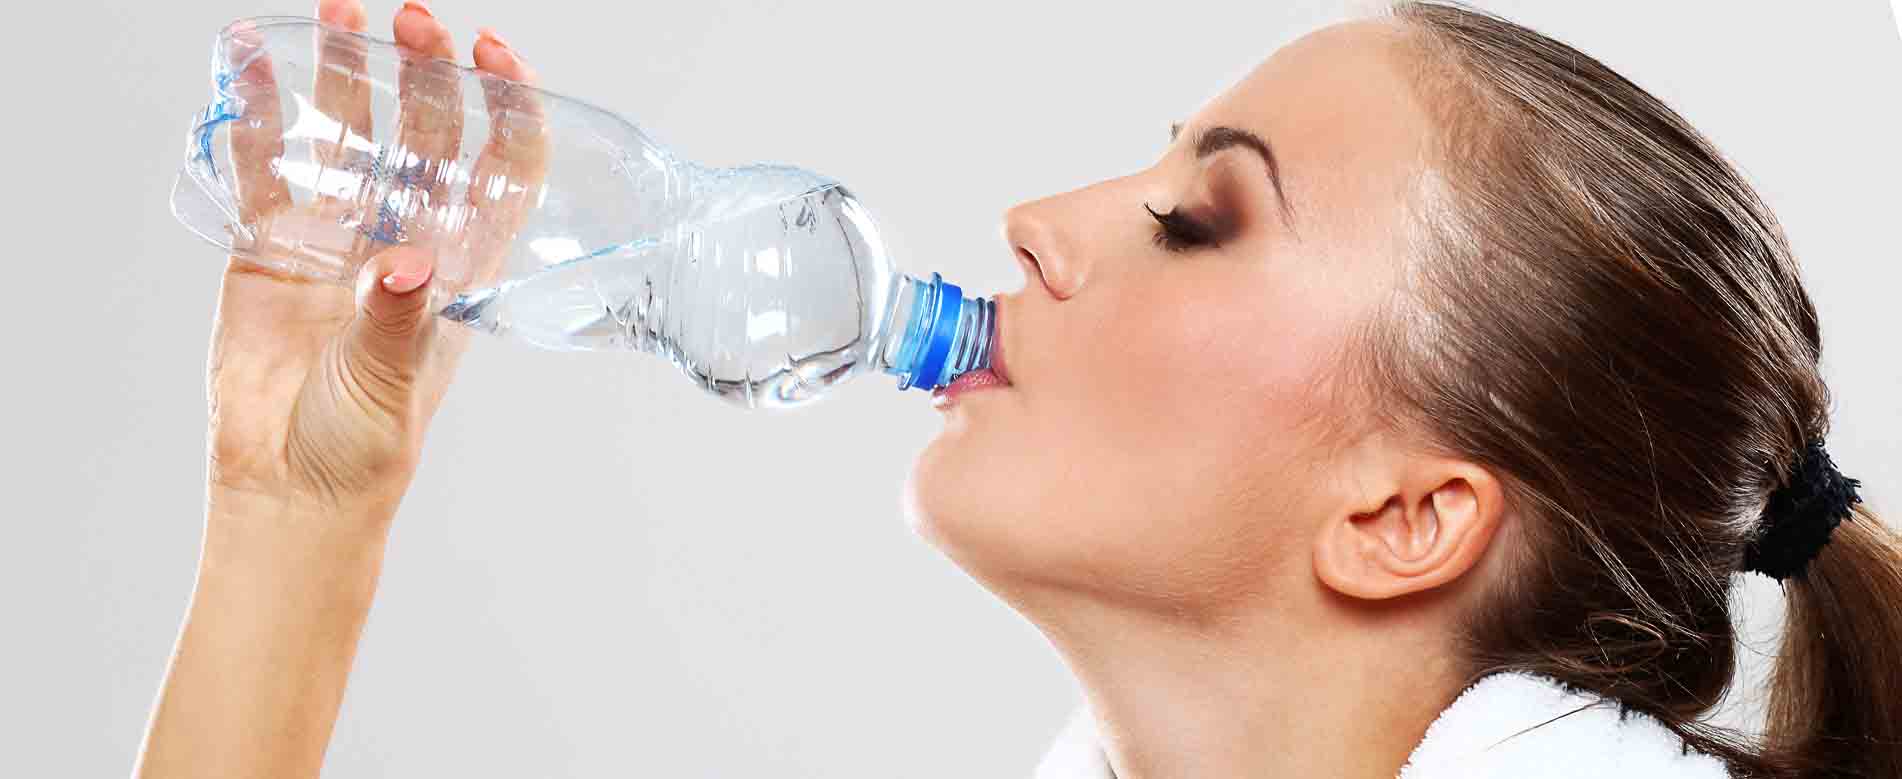 Luz Dental. Beber agua puede ayudar a evitar la halitosis.